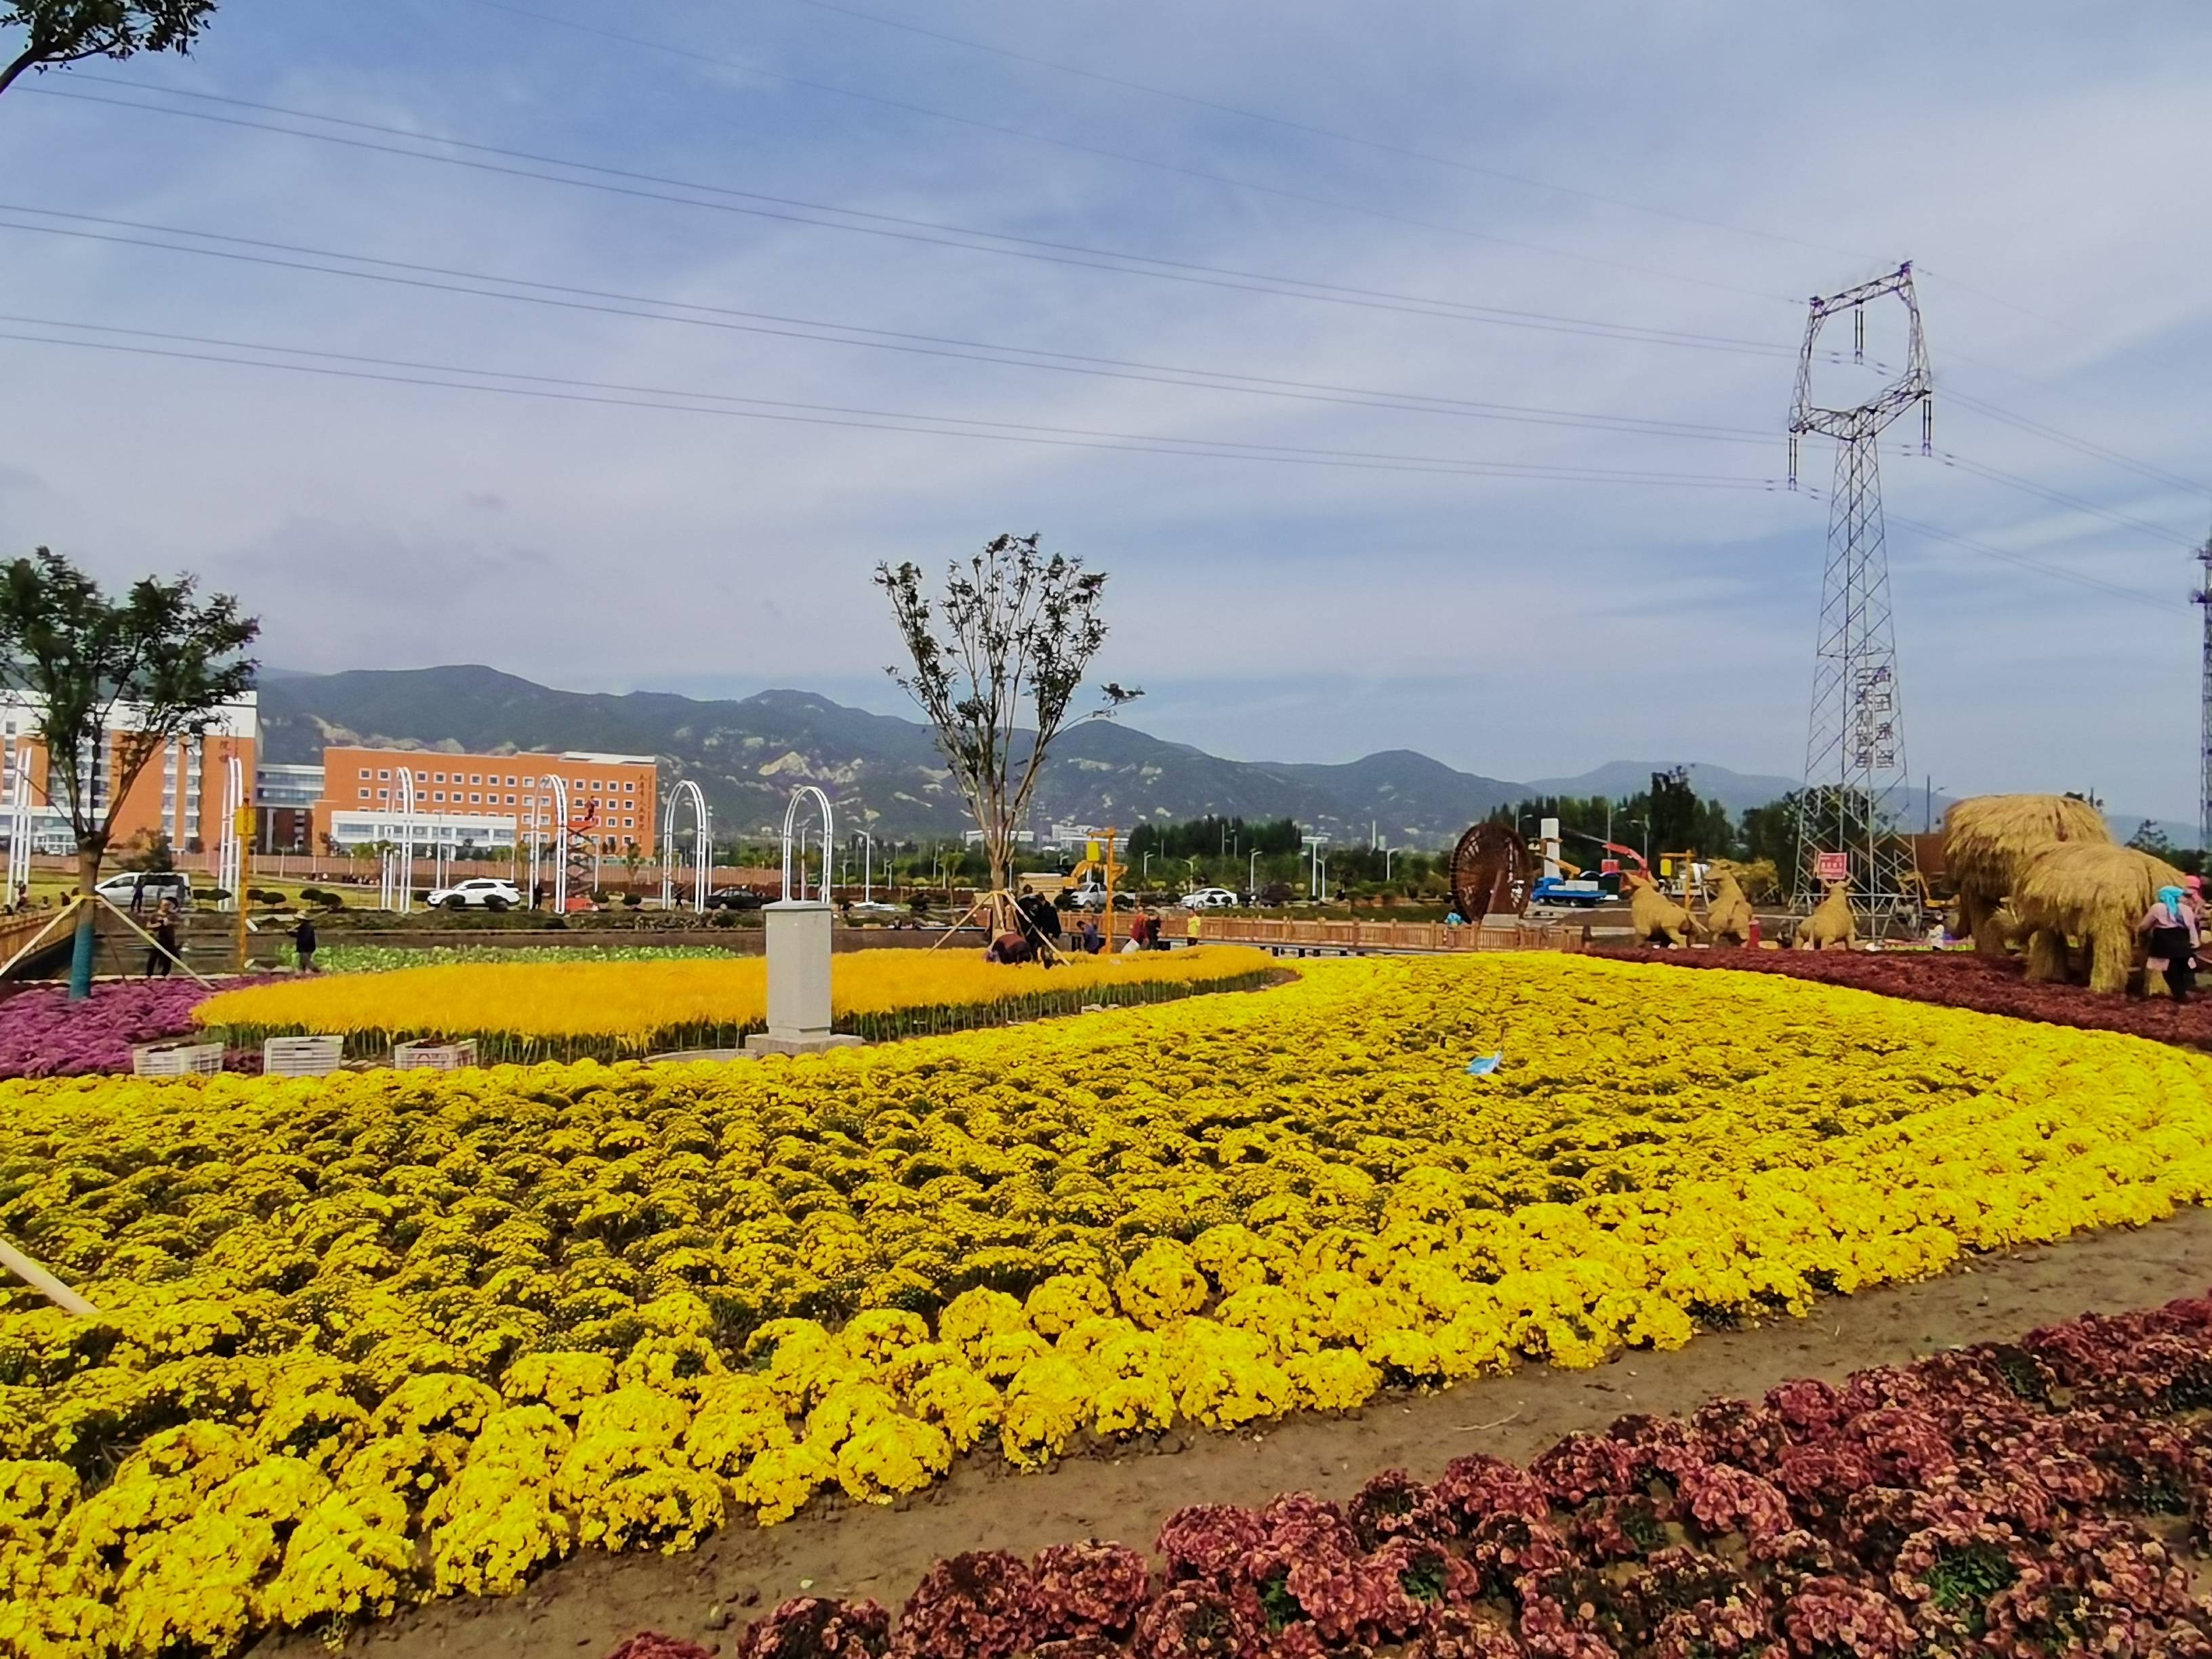 晋源稻花城(稻田公园)开园仪式暨第四届花卉艺术节将于10月1日启幕